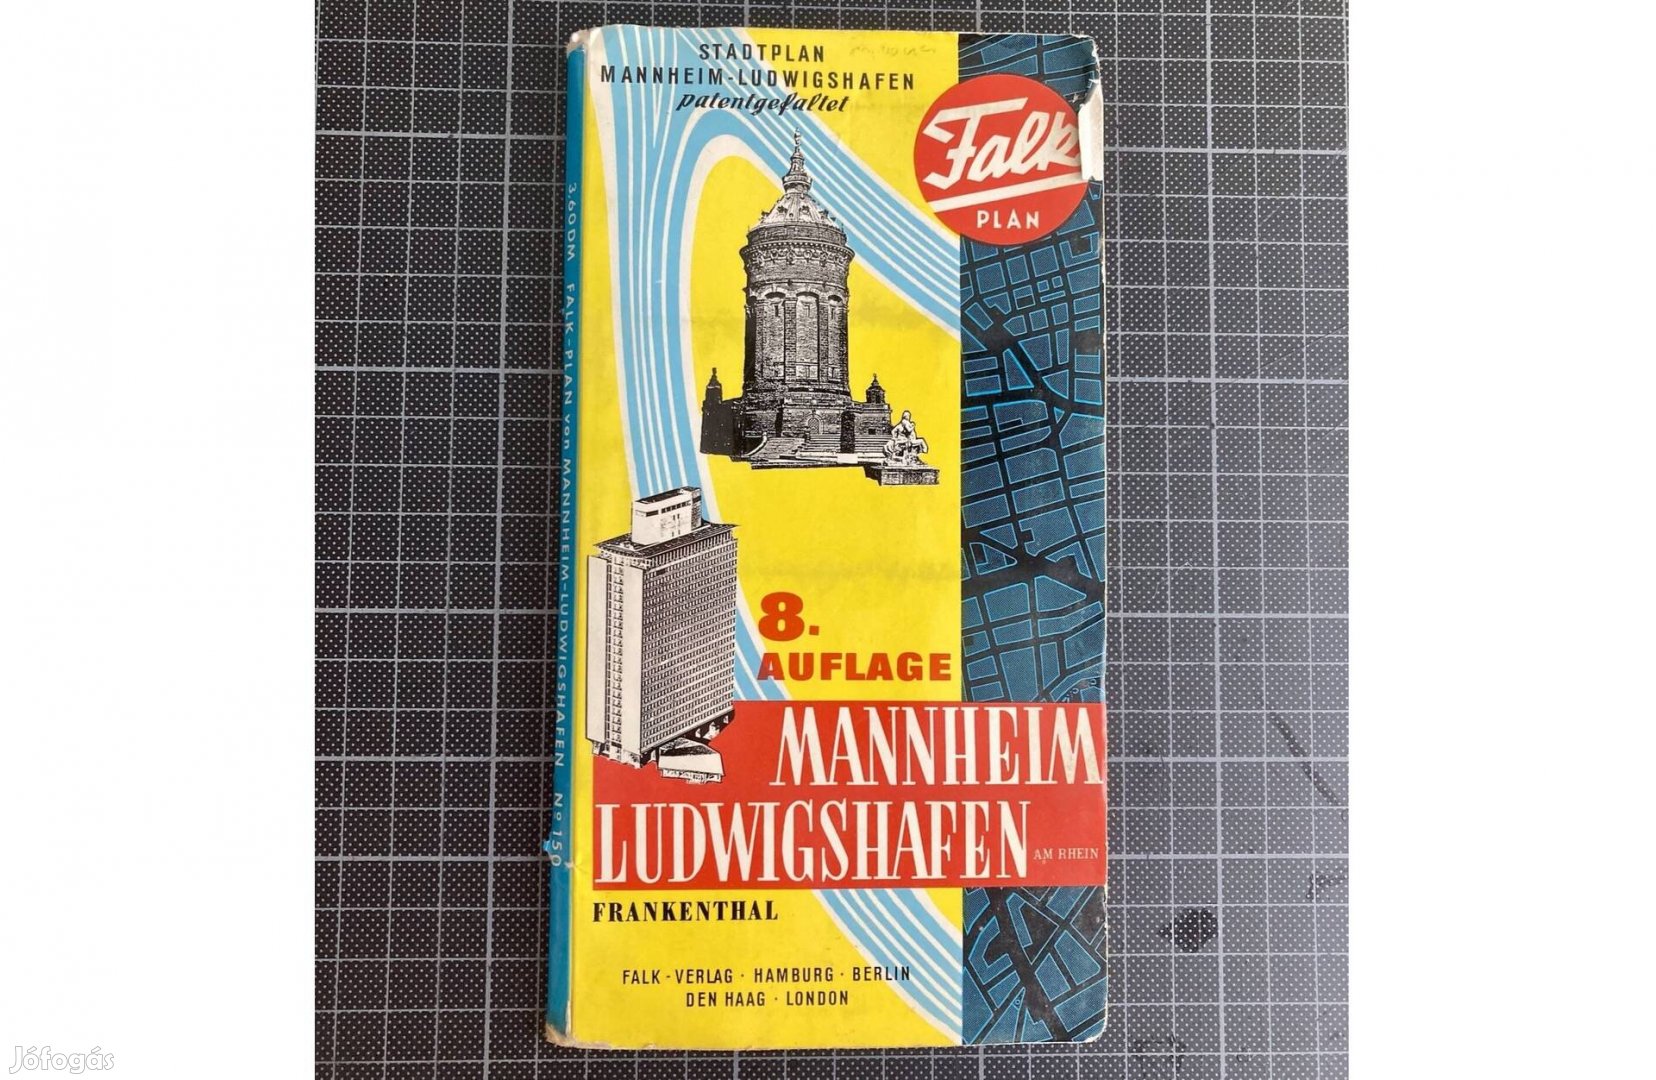 Mannheim-Ludwigshafen térkép. Falk